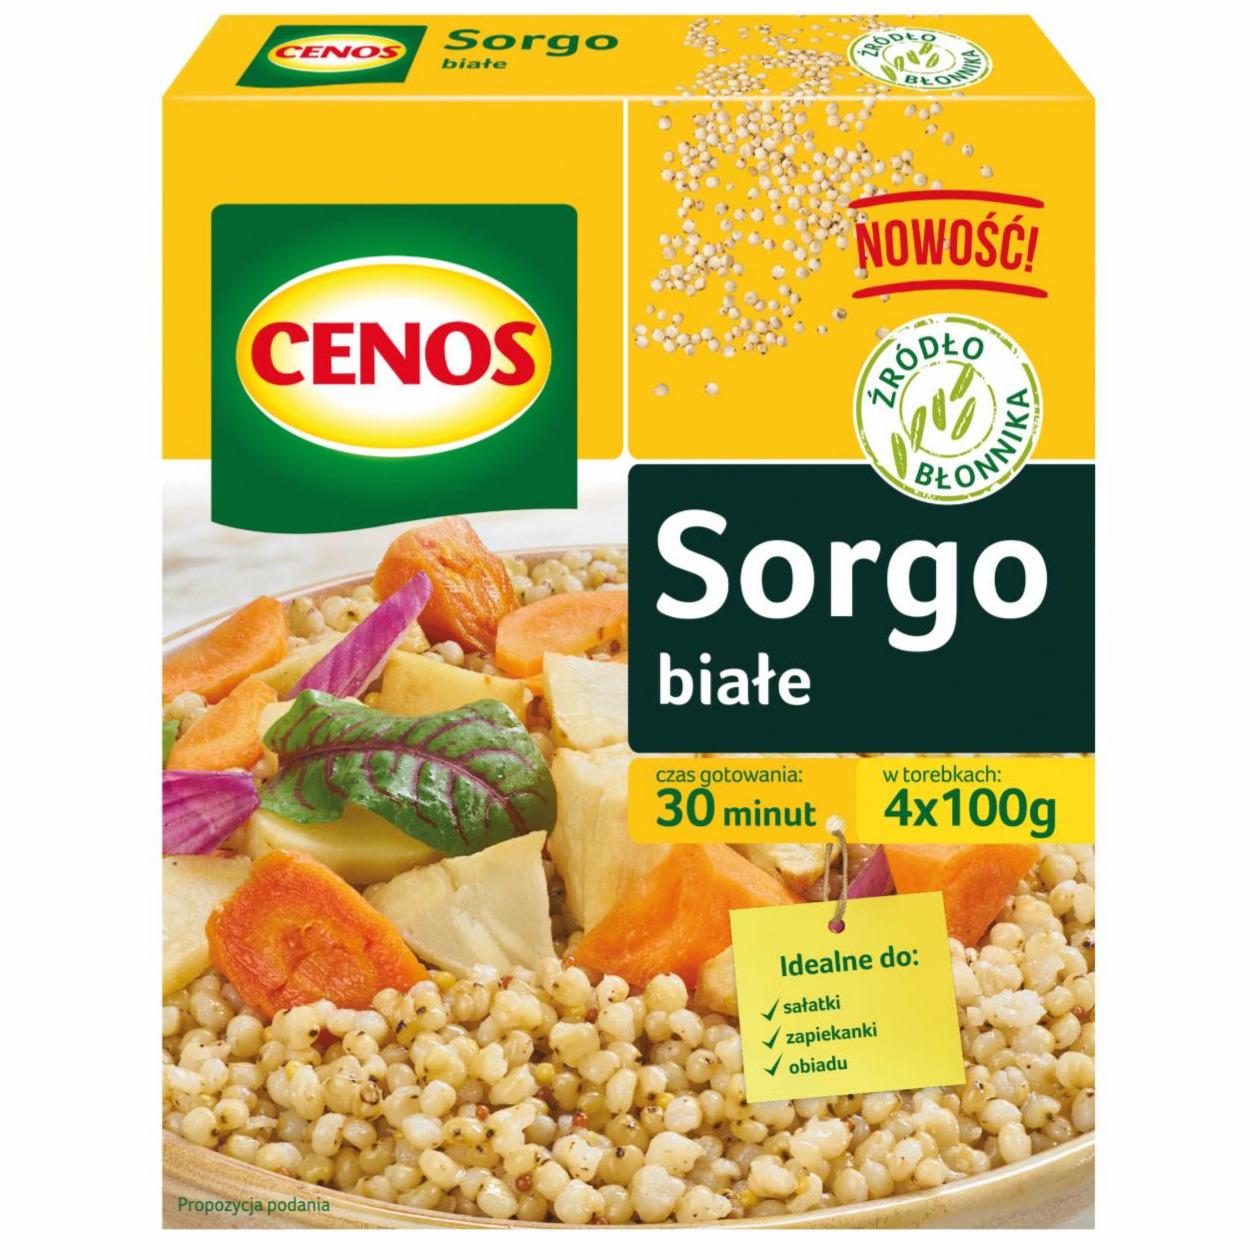 Zdjęcia - Cenos Sorgo białe 400 g (4 x 100 g)